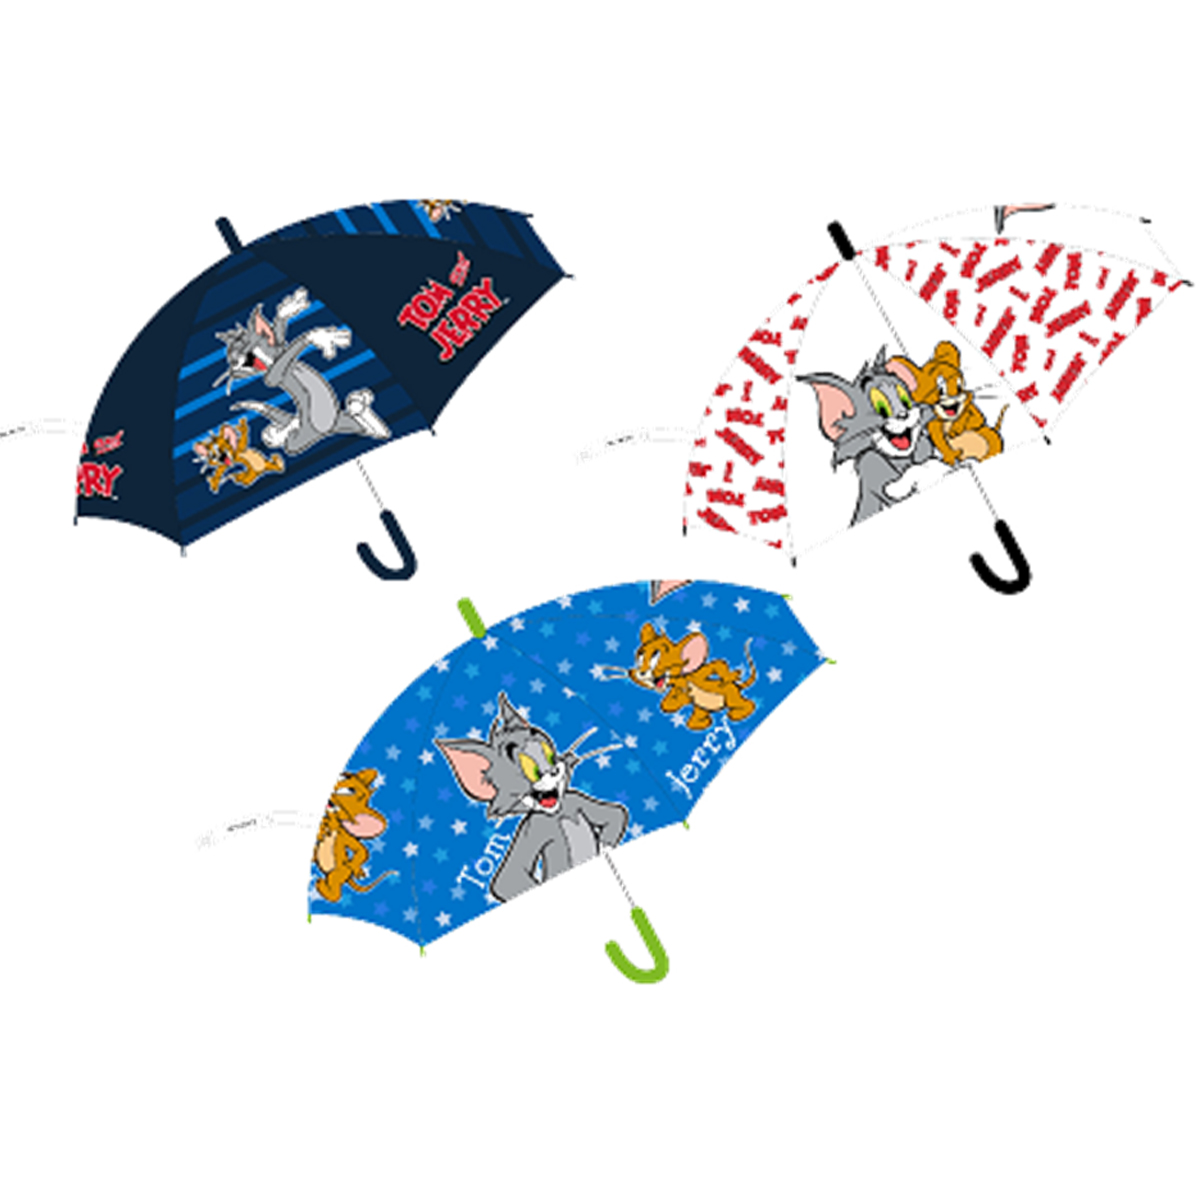 Parapluie Tom & Jerry